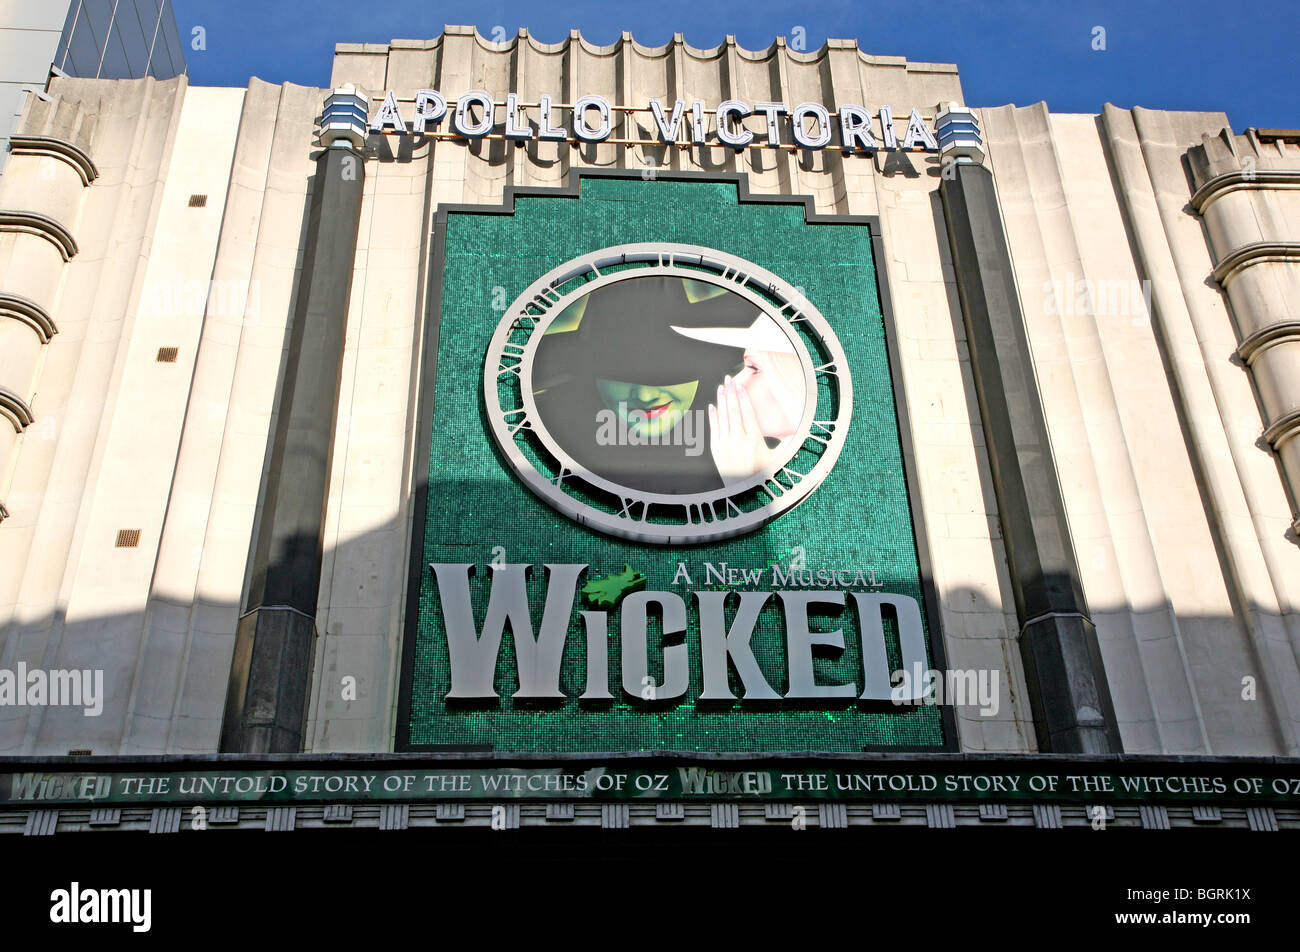 'Wicked' at Apollo Victoria theatre, London Stock Photo